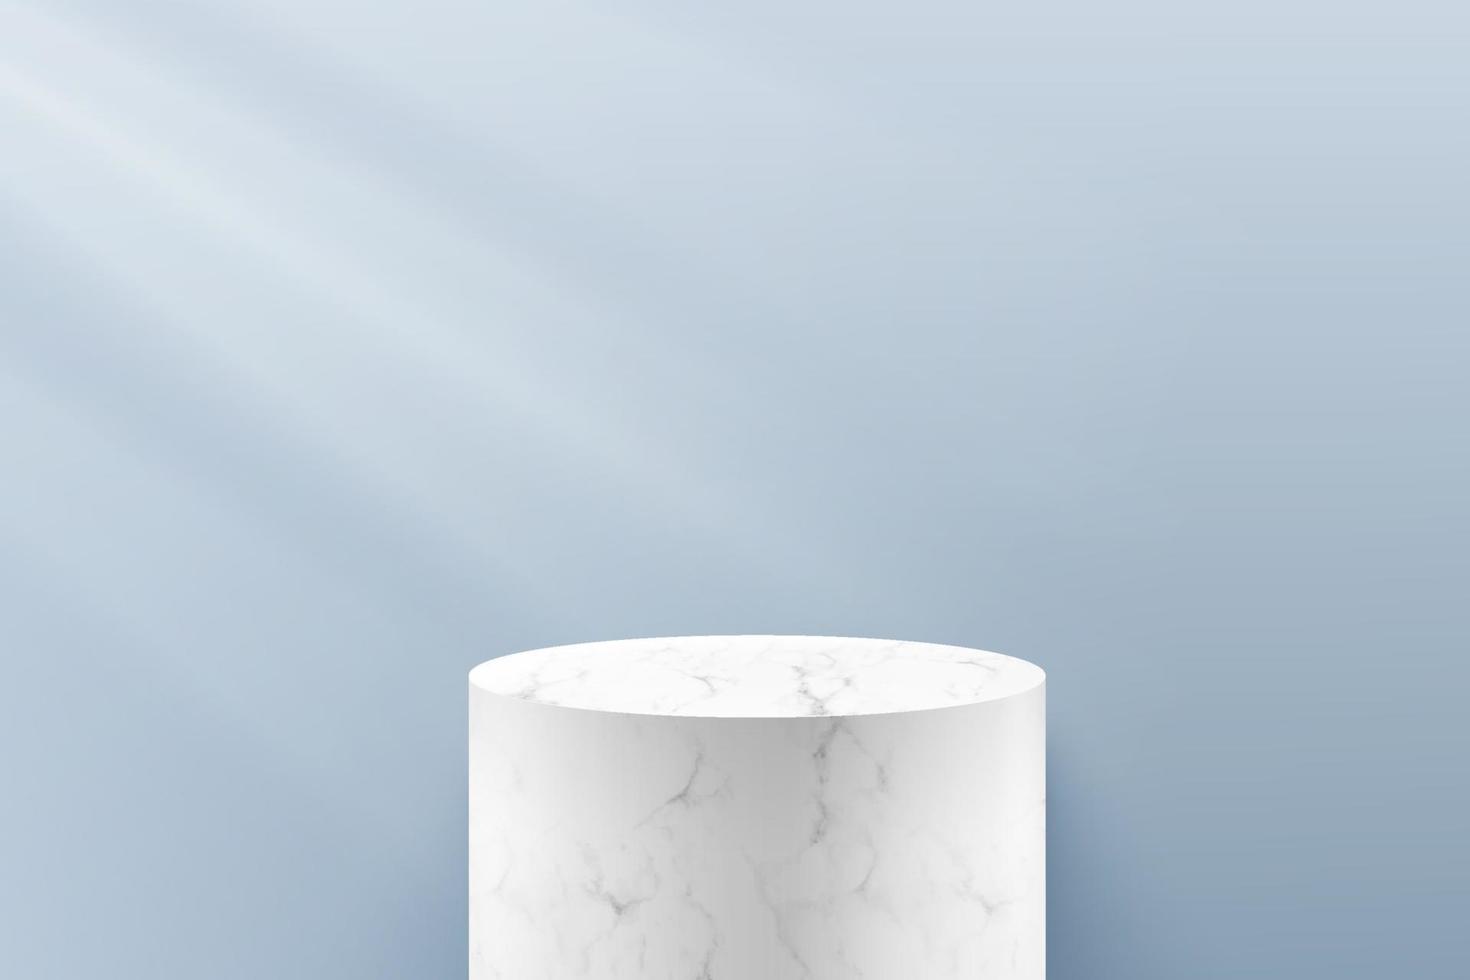 abstrakt vektor som framför 3d form för reklamproduktvisning med kopieringsutrymme. modern vit marmor textur cylinder podium med grå tomt rum bakgrund. minimal scen studio rum koncept.